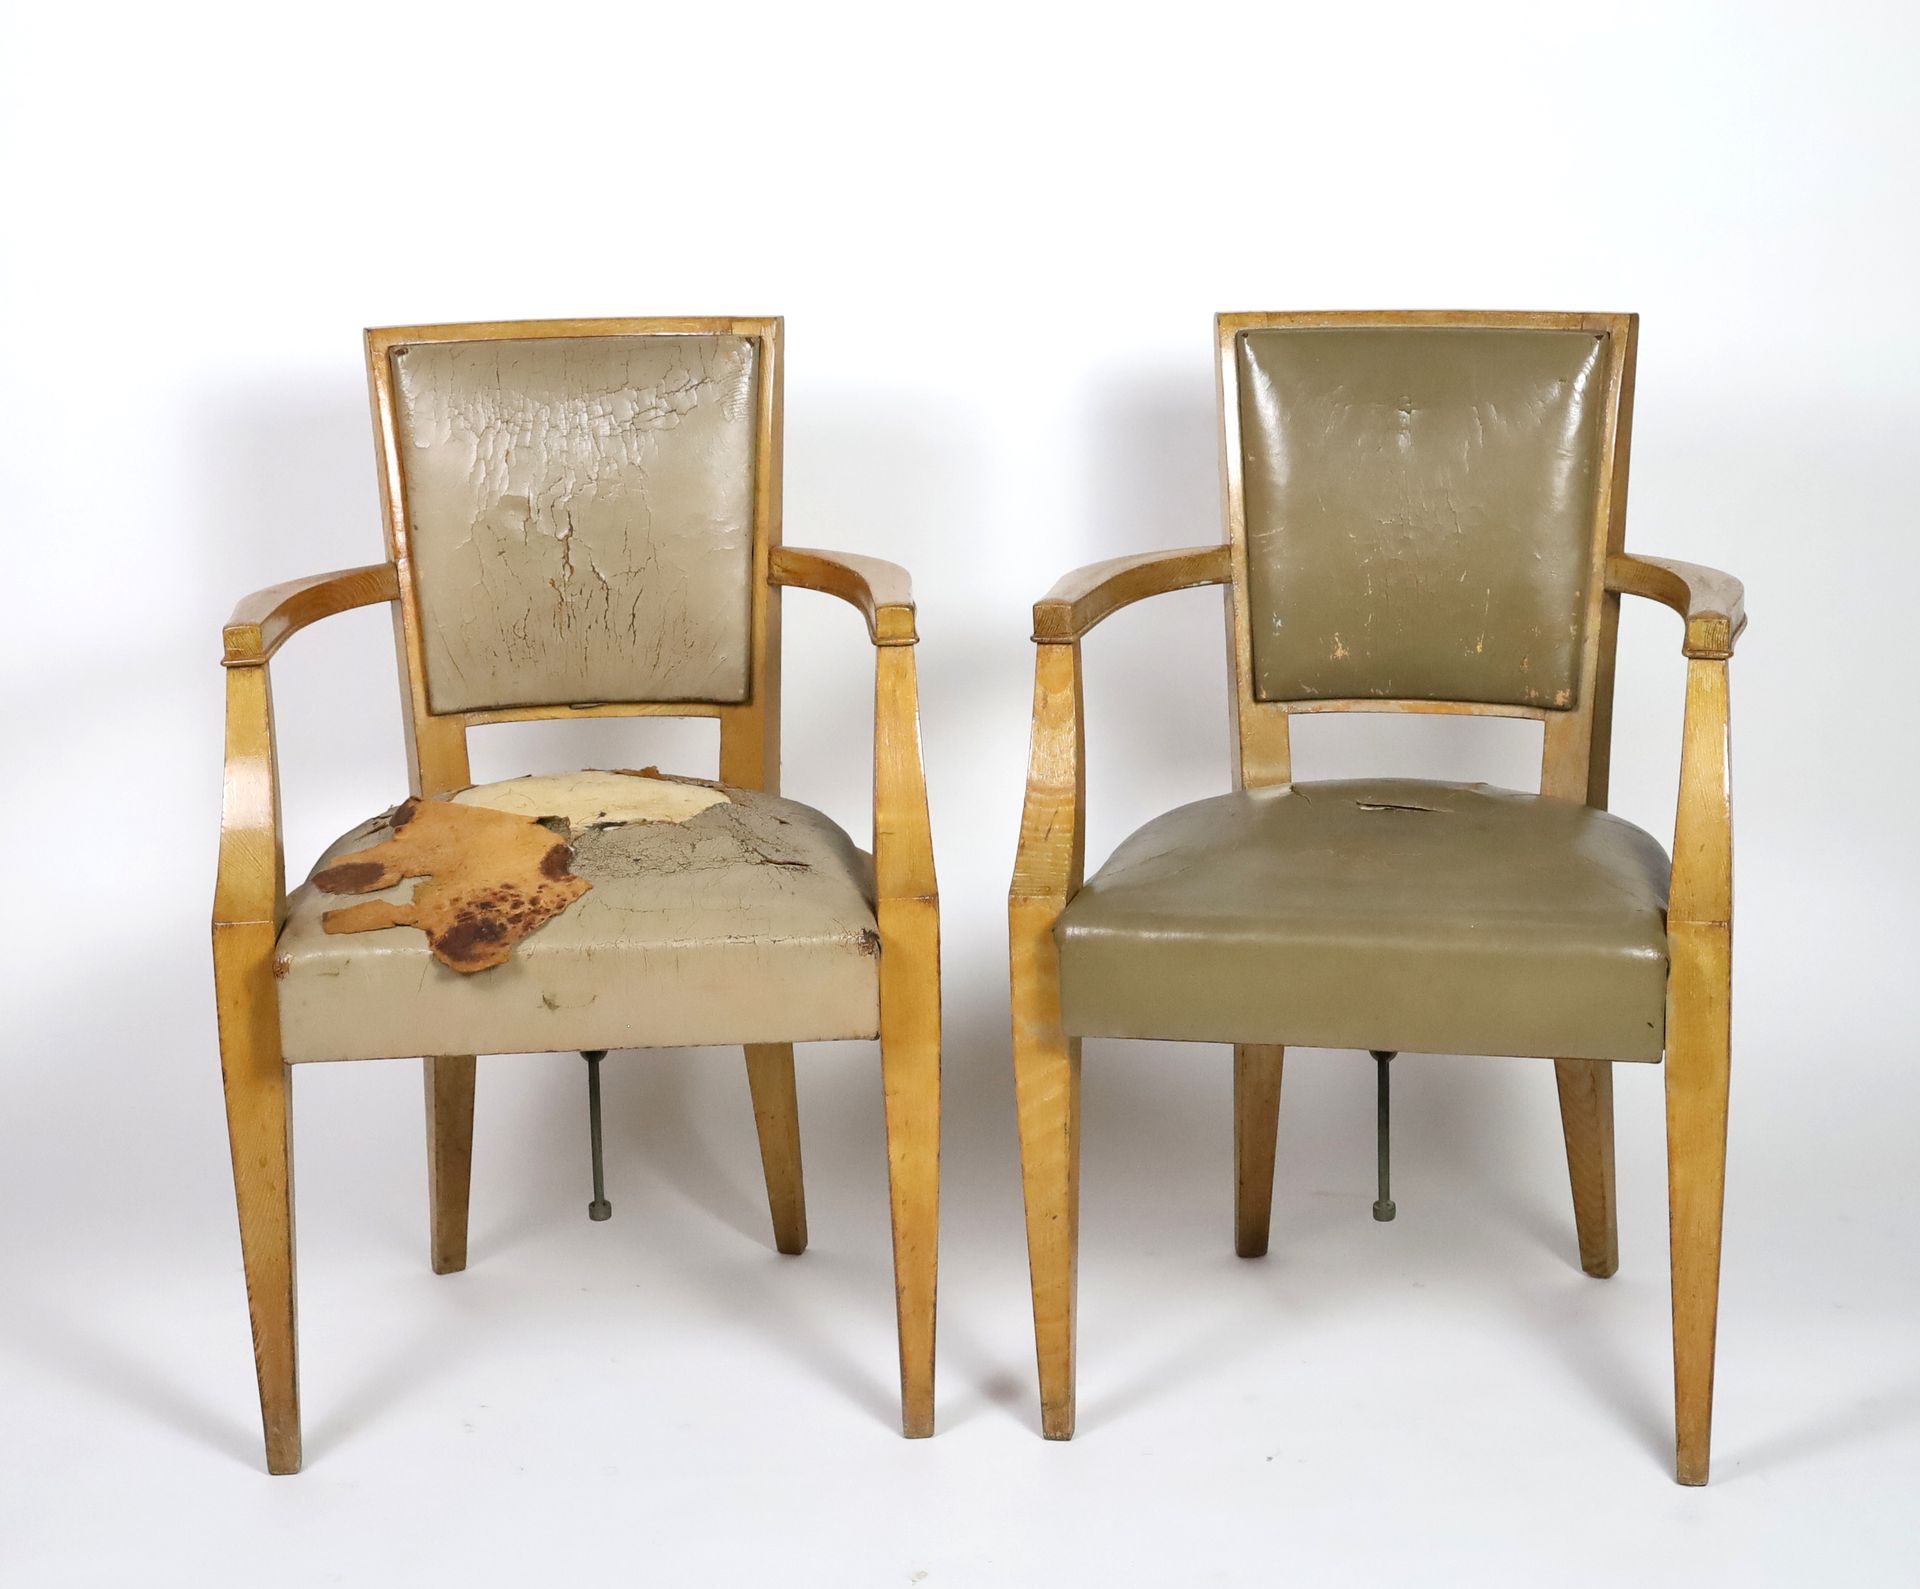 Null CGT Liberté 1950-天然木扶手椅一对，座椅和靠背为灰色鼹鼠皮-高86厘米，宽54厘米，长43厘米（磨损，意外）。